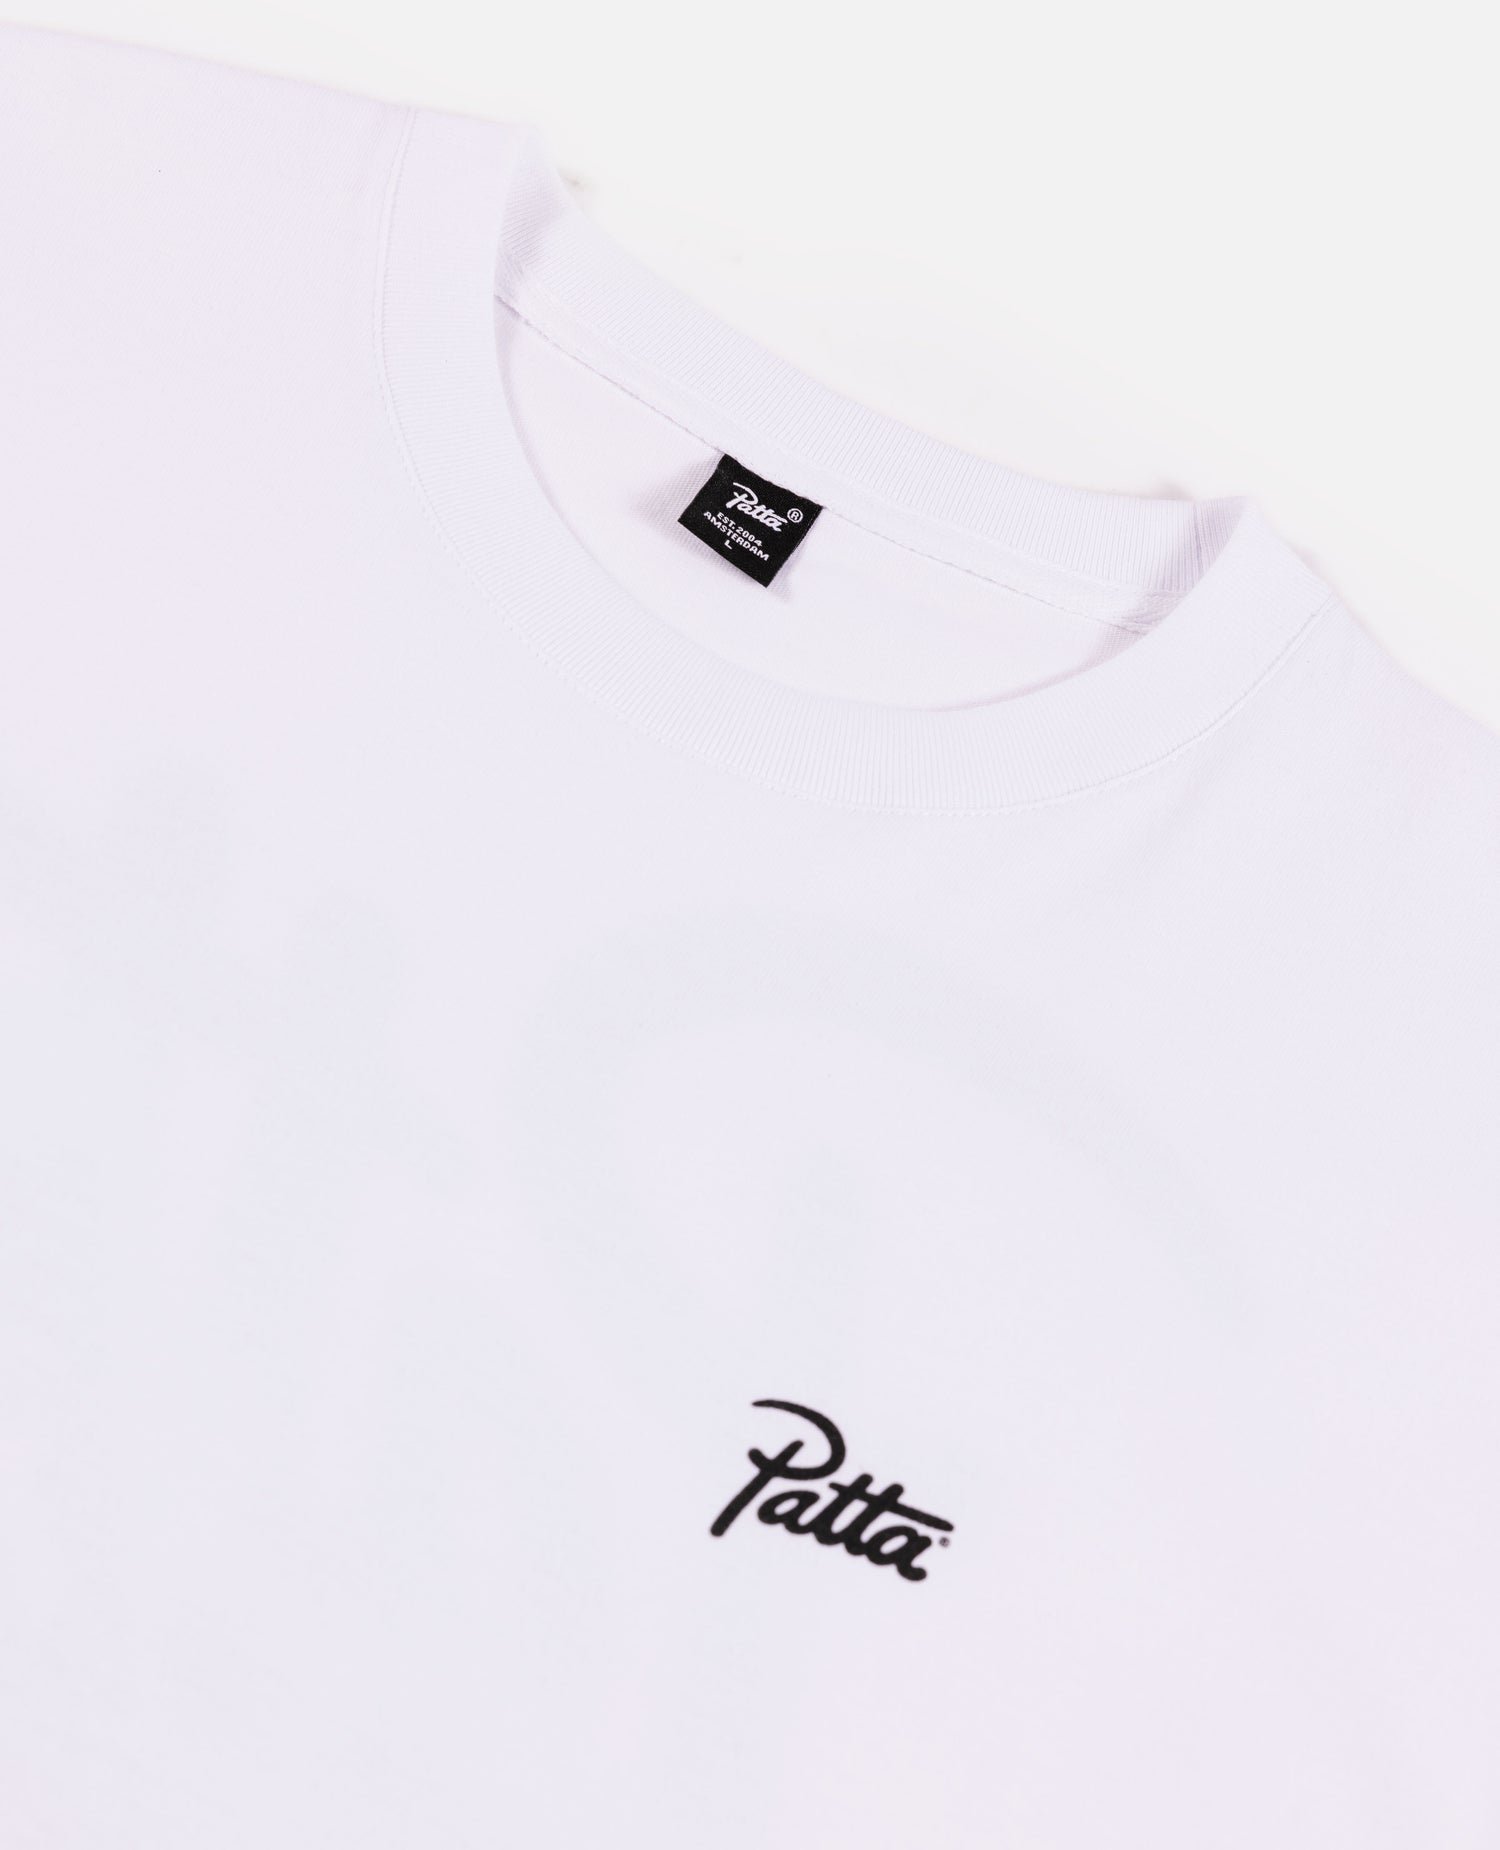 Patta Revolution T-Shirt (White)